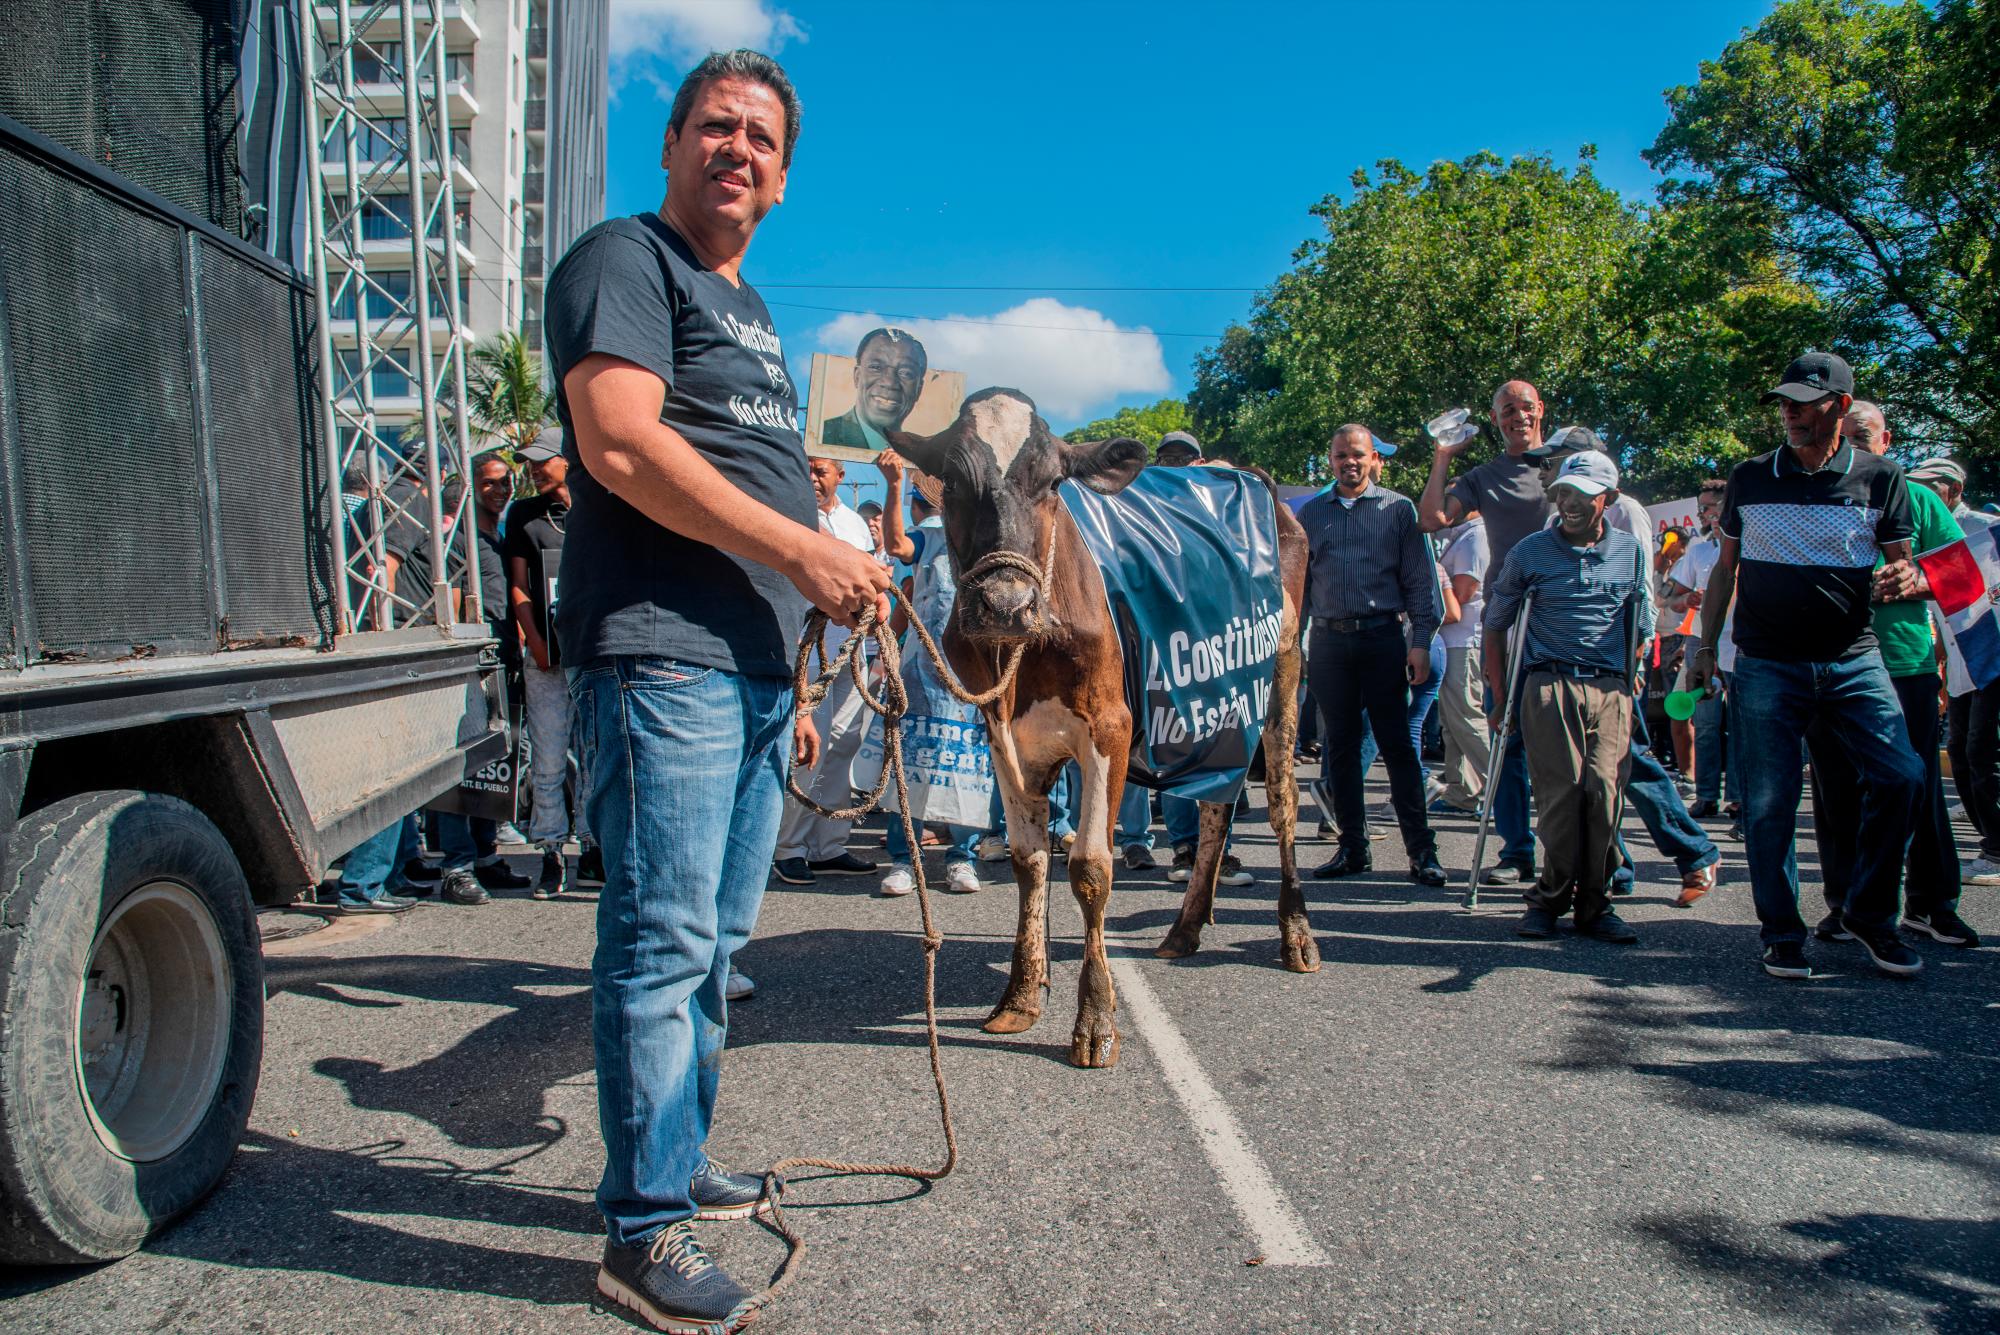 Un hombre sostiene un vaca que porta un letrero advirtiendo que la Constitución no esta en venta